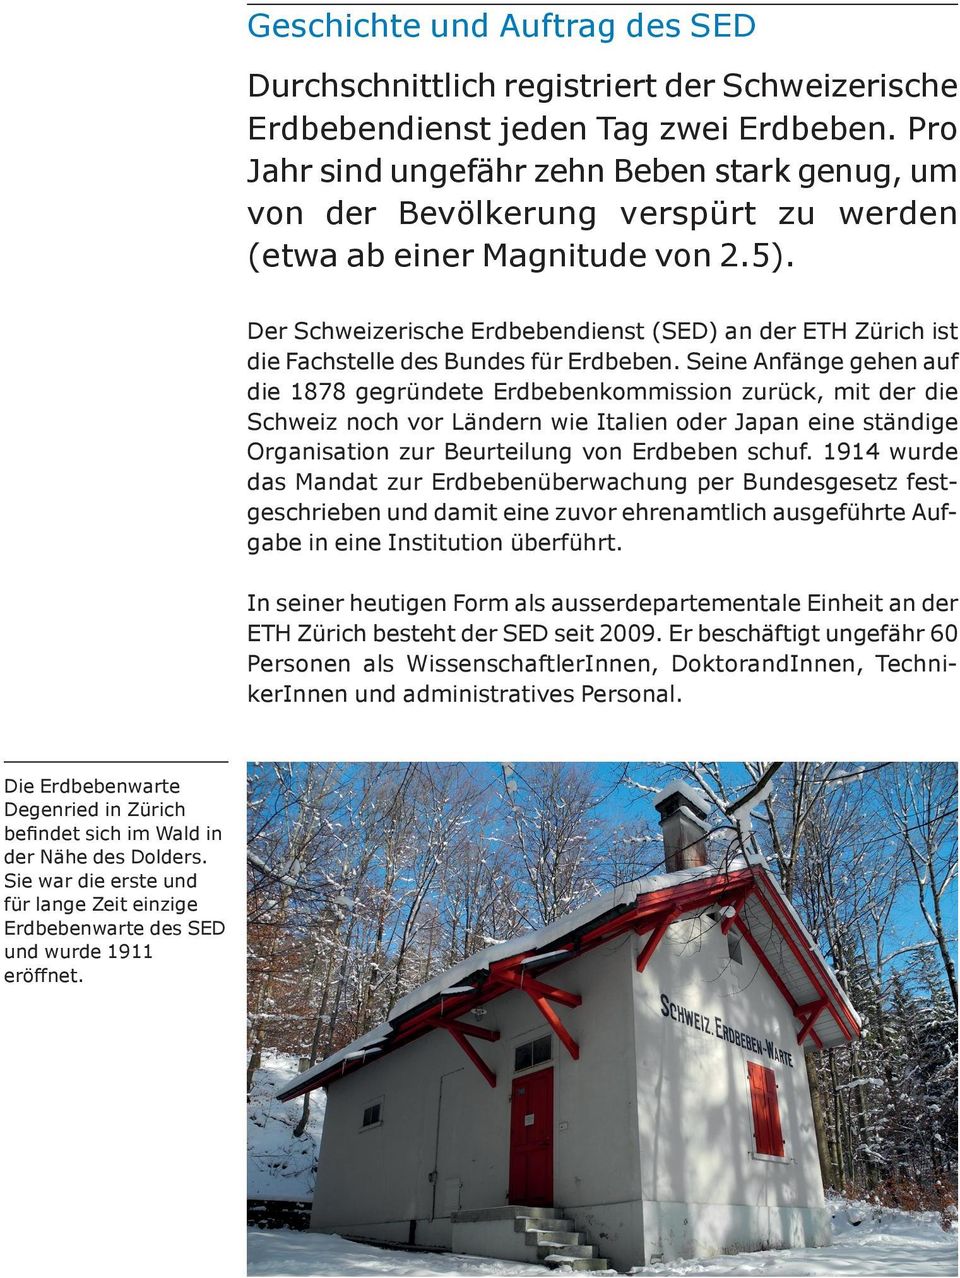 Der Schweizerische Erdbebendienst (SED) an der ETH Zürich ist die Fachstelle des Bundes für Erdbeben.